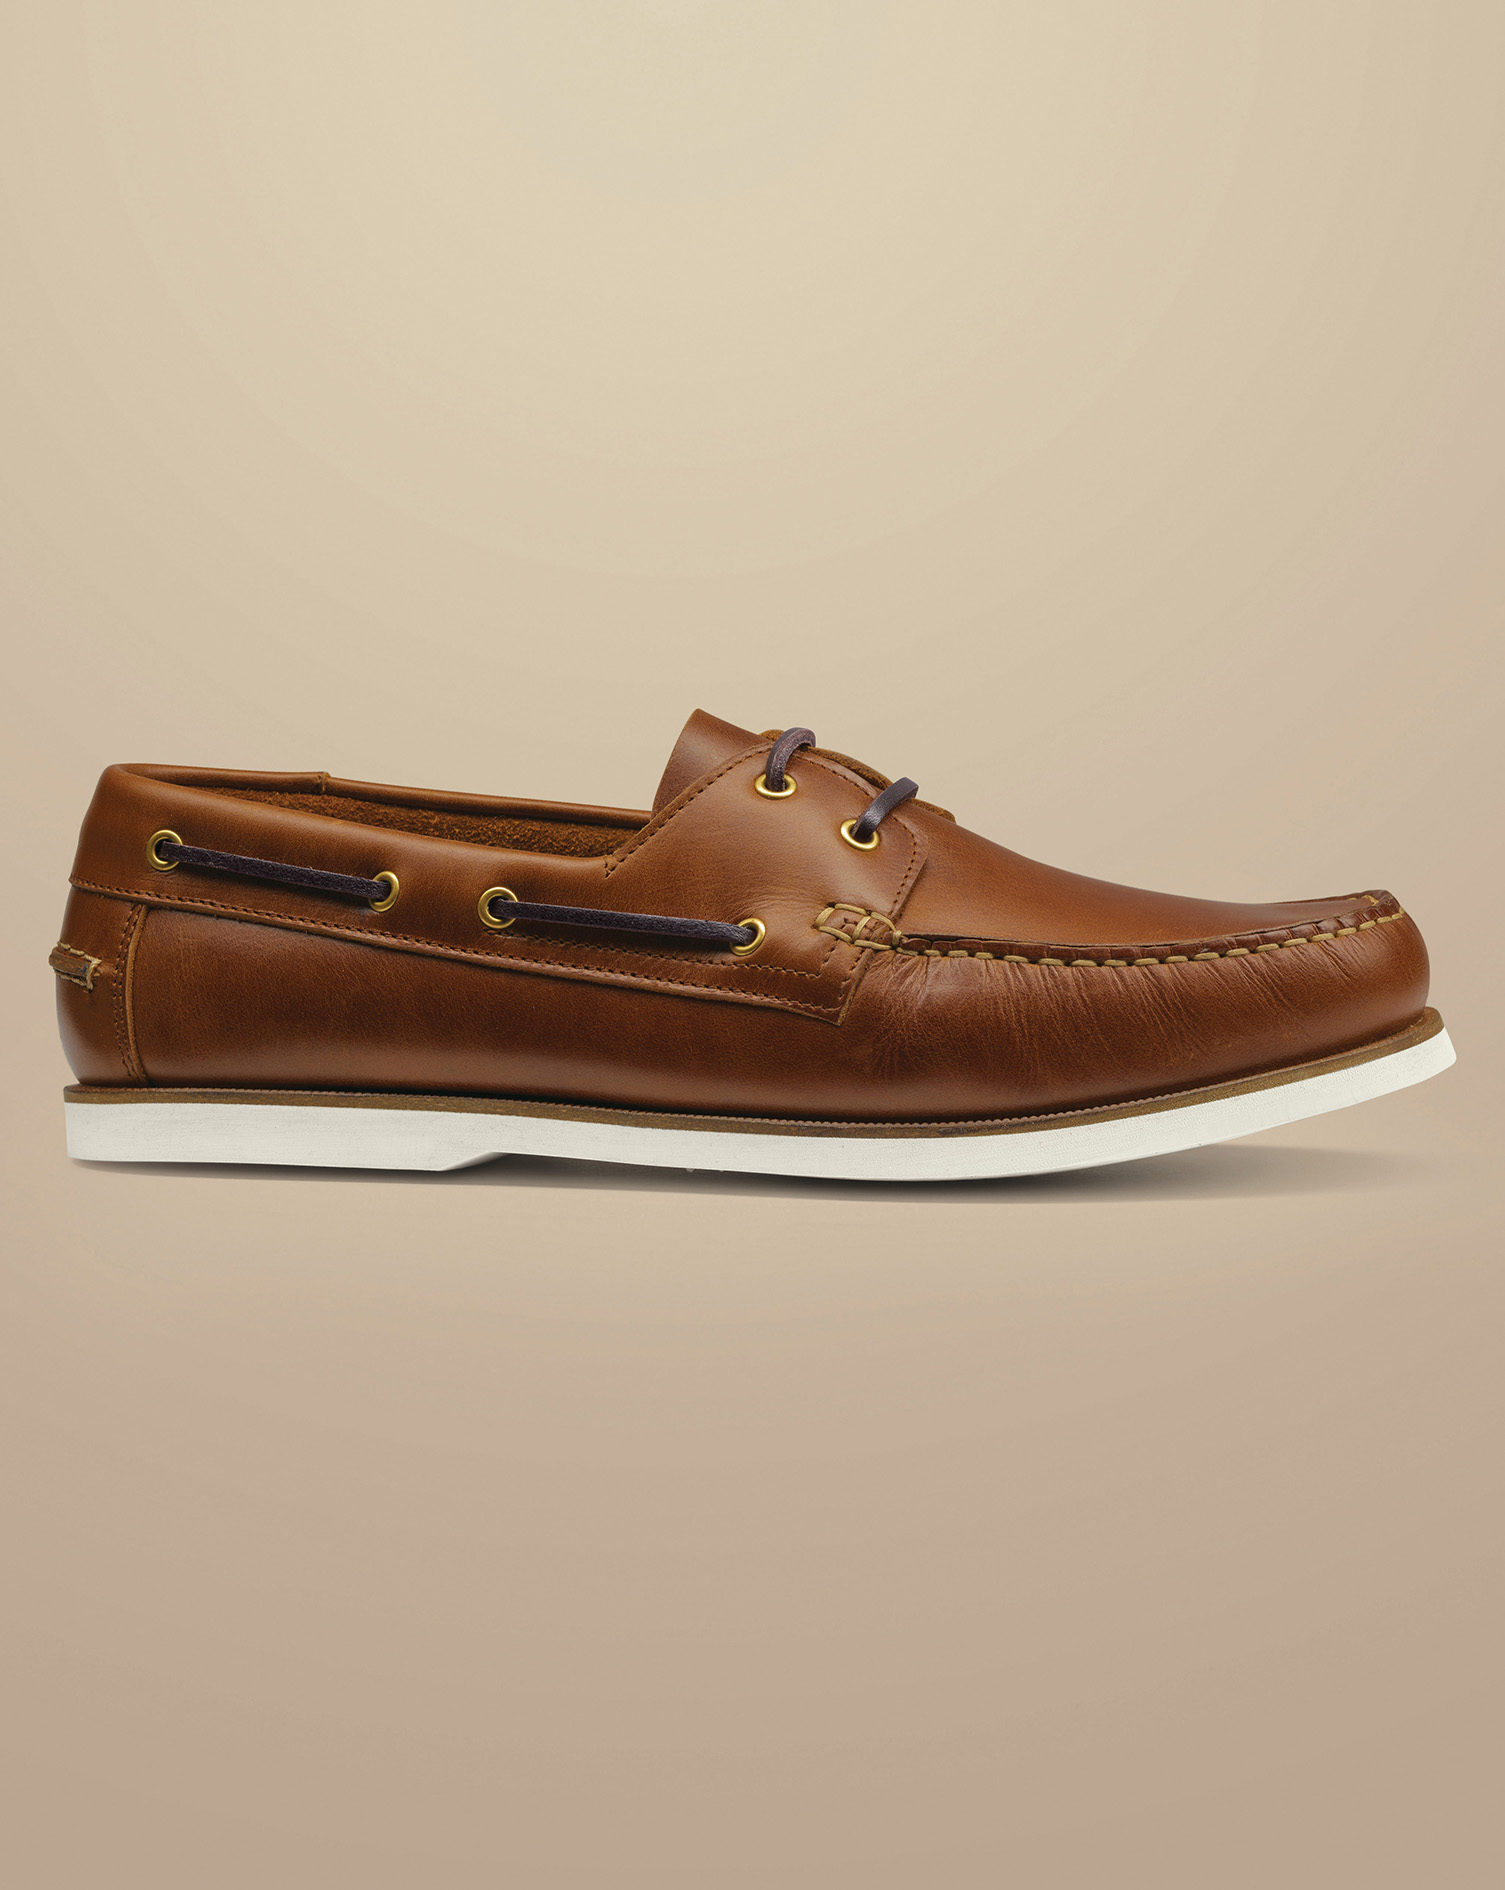 Men's Charles Tyrwhitt Leather Boat Shoe - Dark Tan Neutral Size 9
